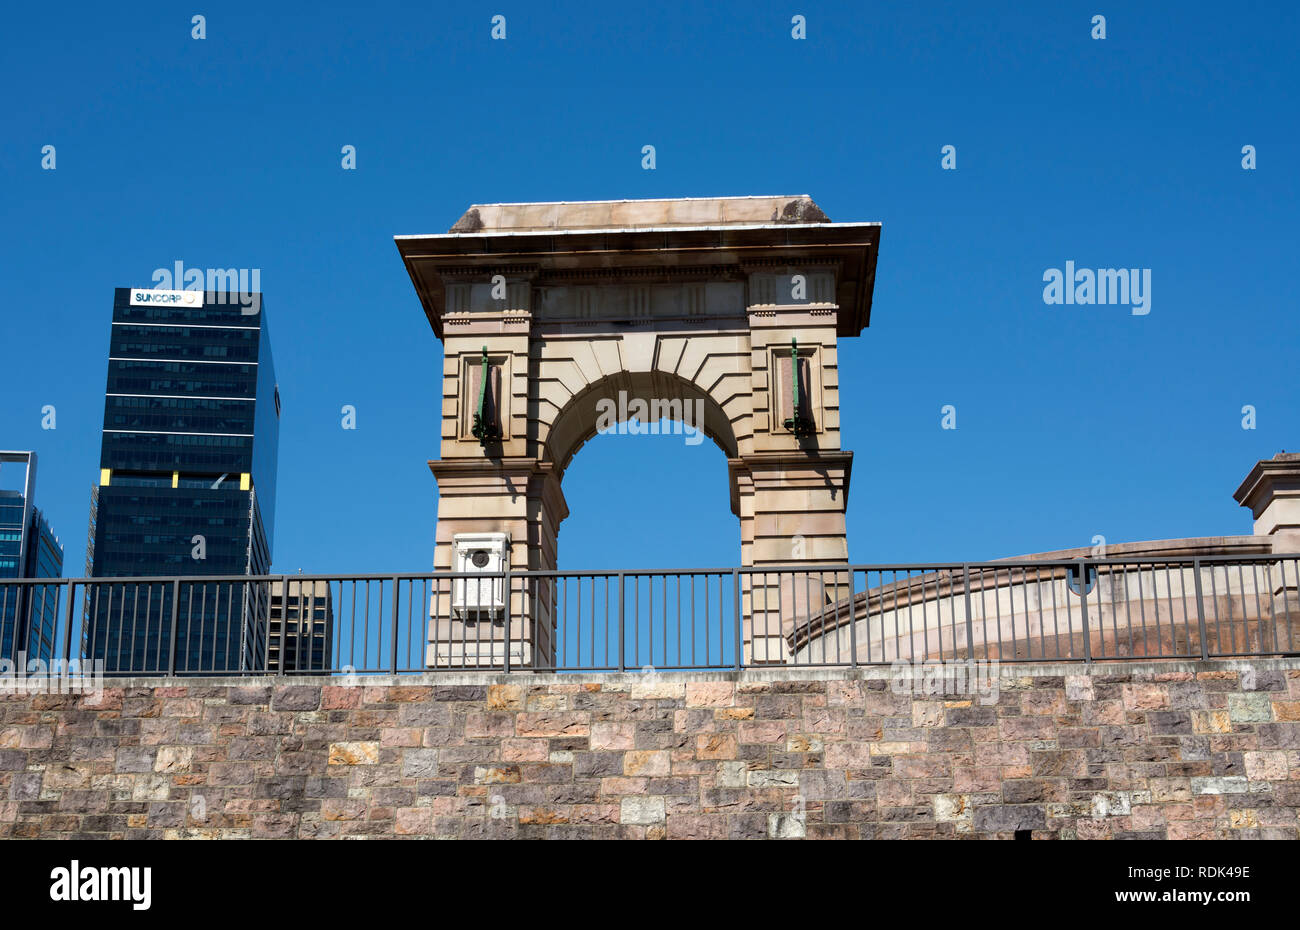 Hector Vasyli Arche commémorative près de Pont Victoria, South Bank, Brisbane, Queensland, Australie Banque D'Images